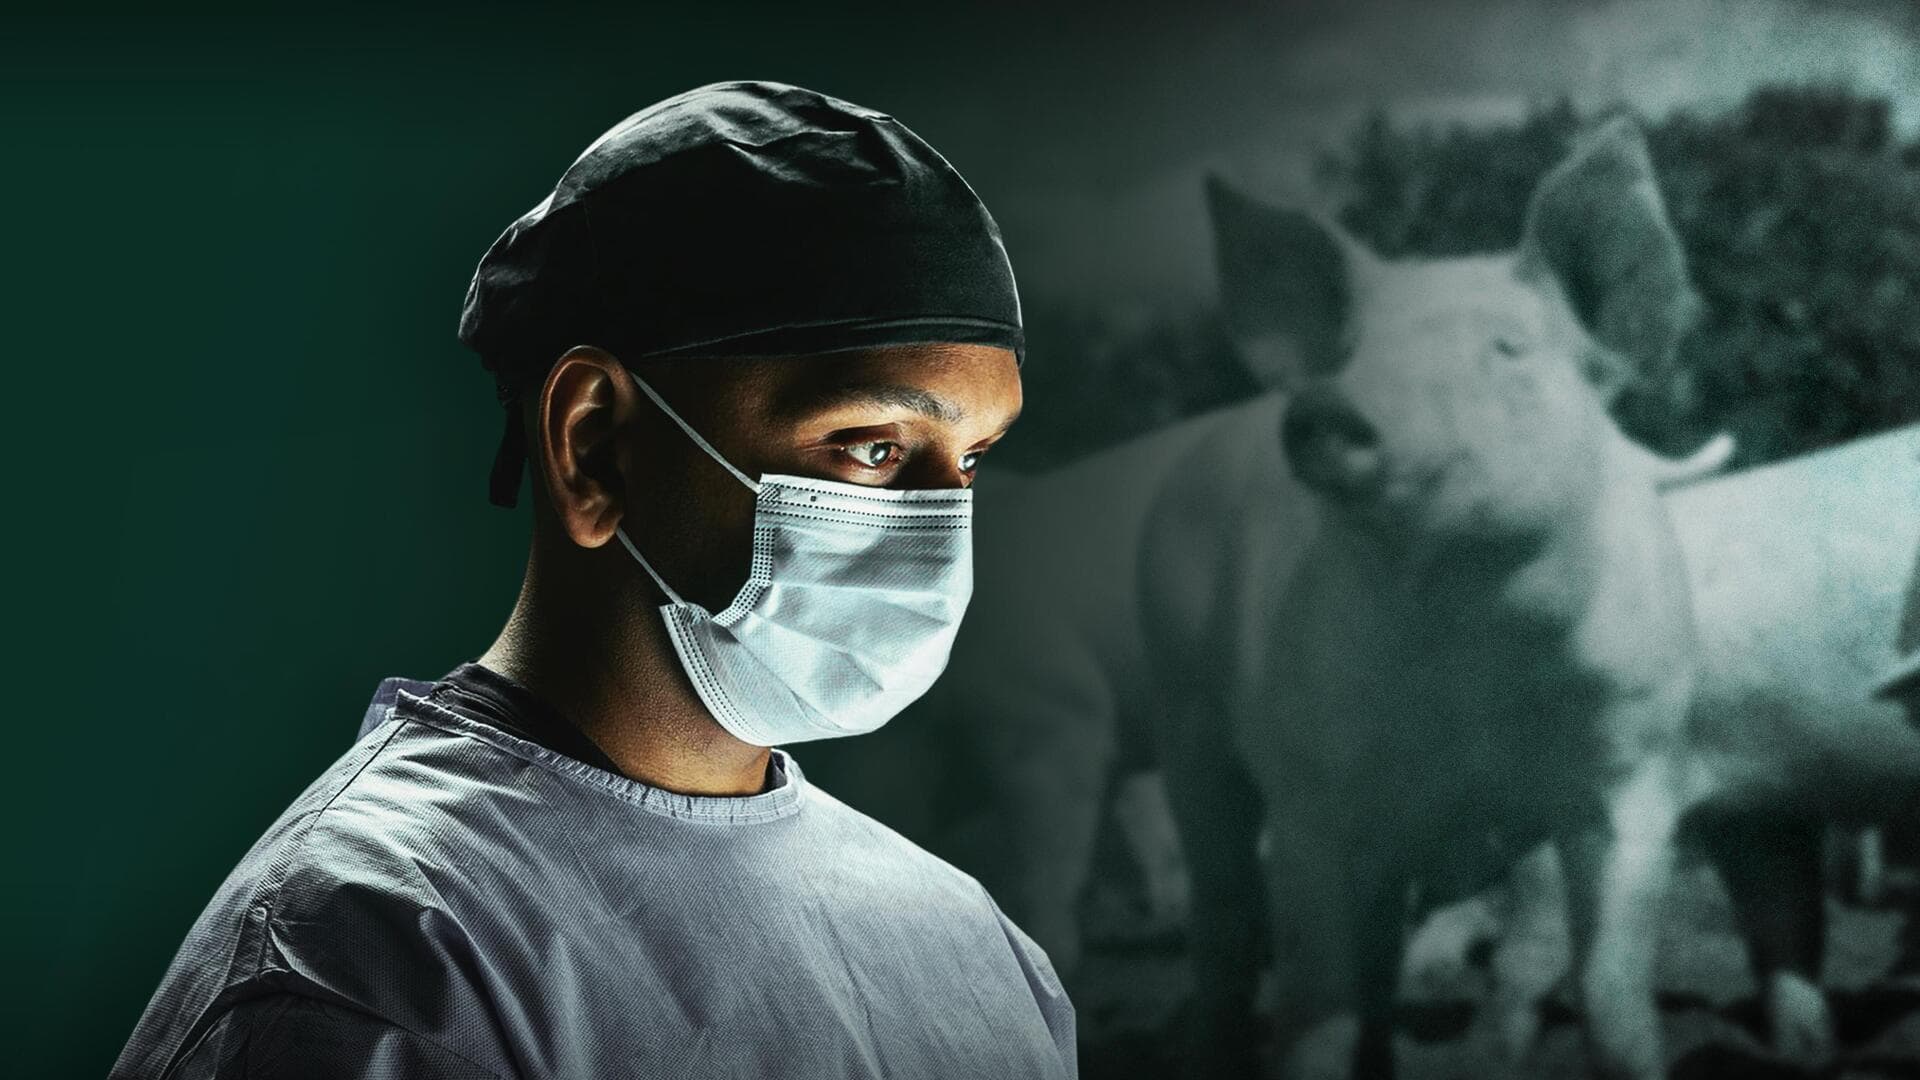 अमेरिका: डॉक्टरों ने इंसान के शरीर में लगाई सुअर की किडनी, दिख रहे सकारात्मक नतीजे